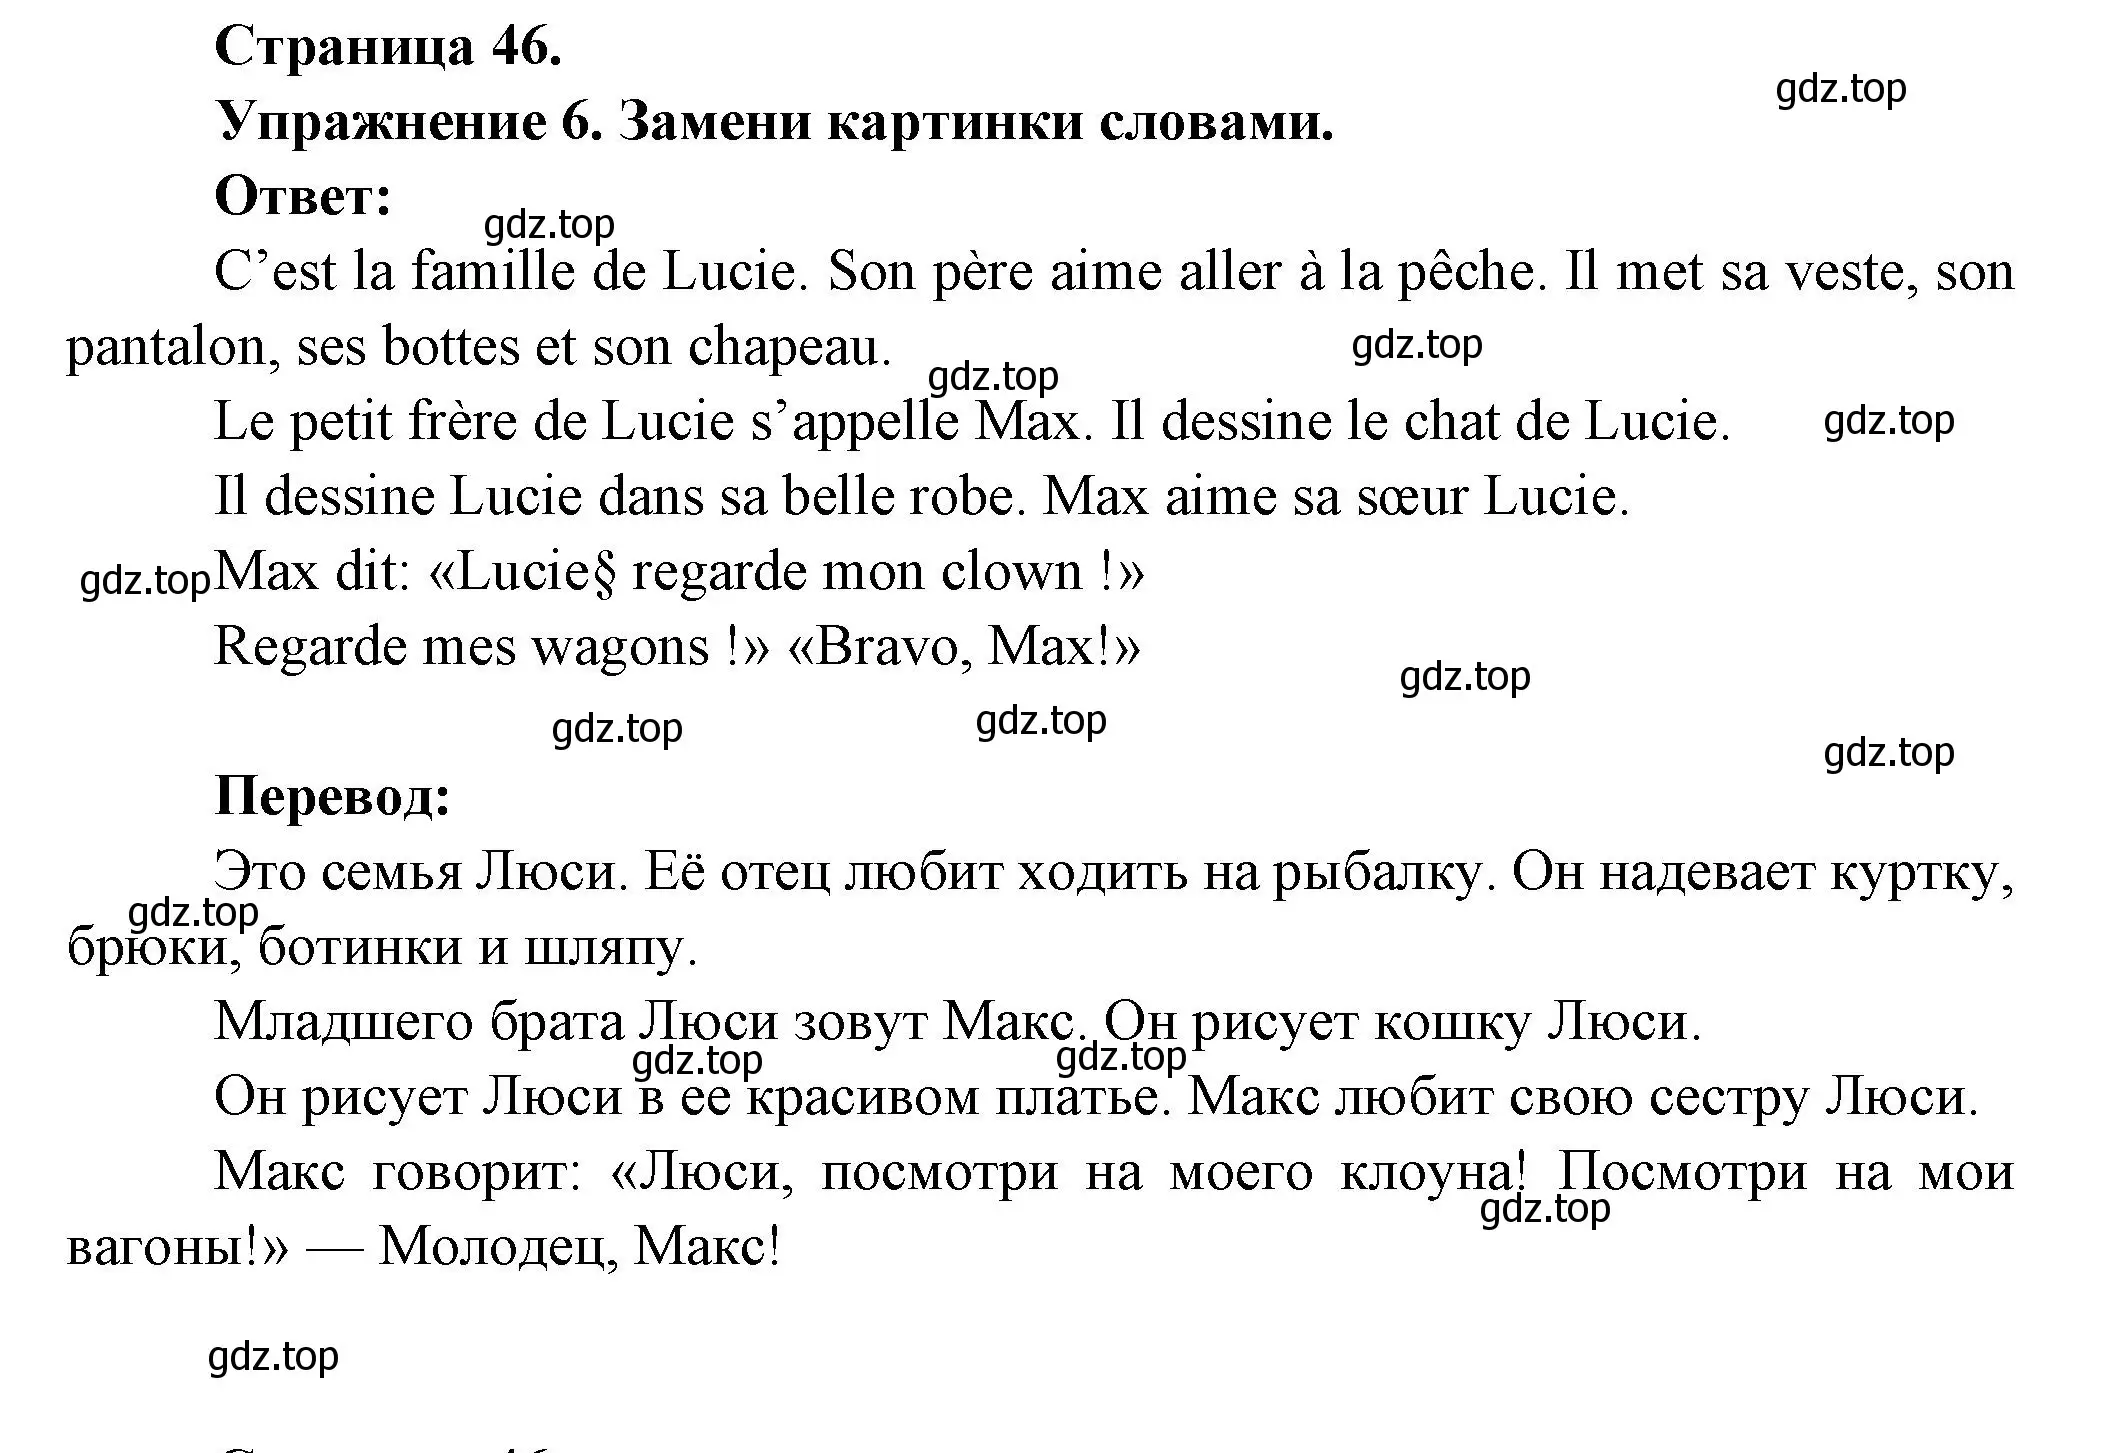 Решение номер 6 (страница 46) гдз по французскому языку 5 класс Береговская, Белосельская, учебник 1 часть